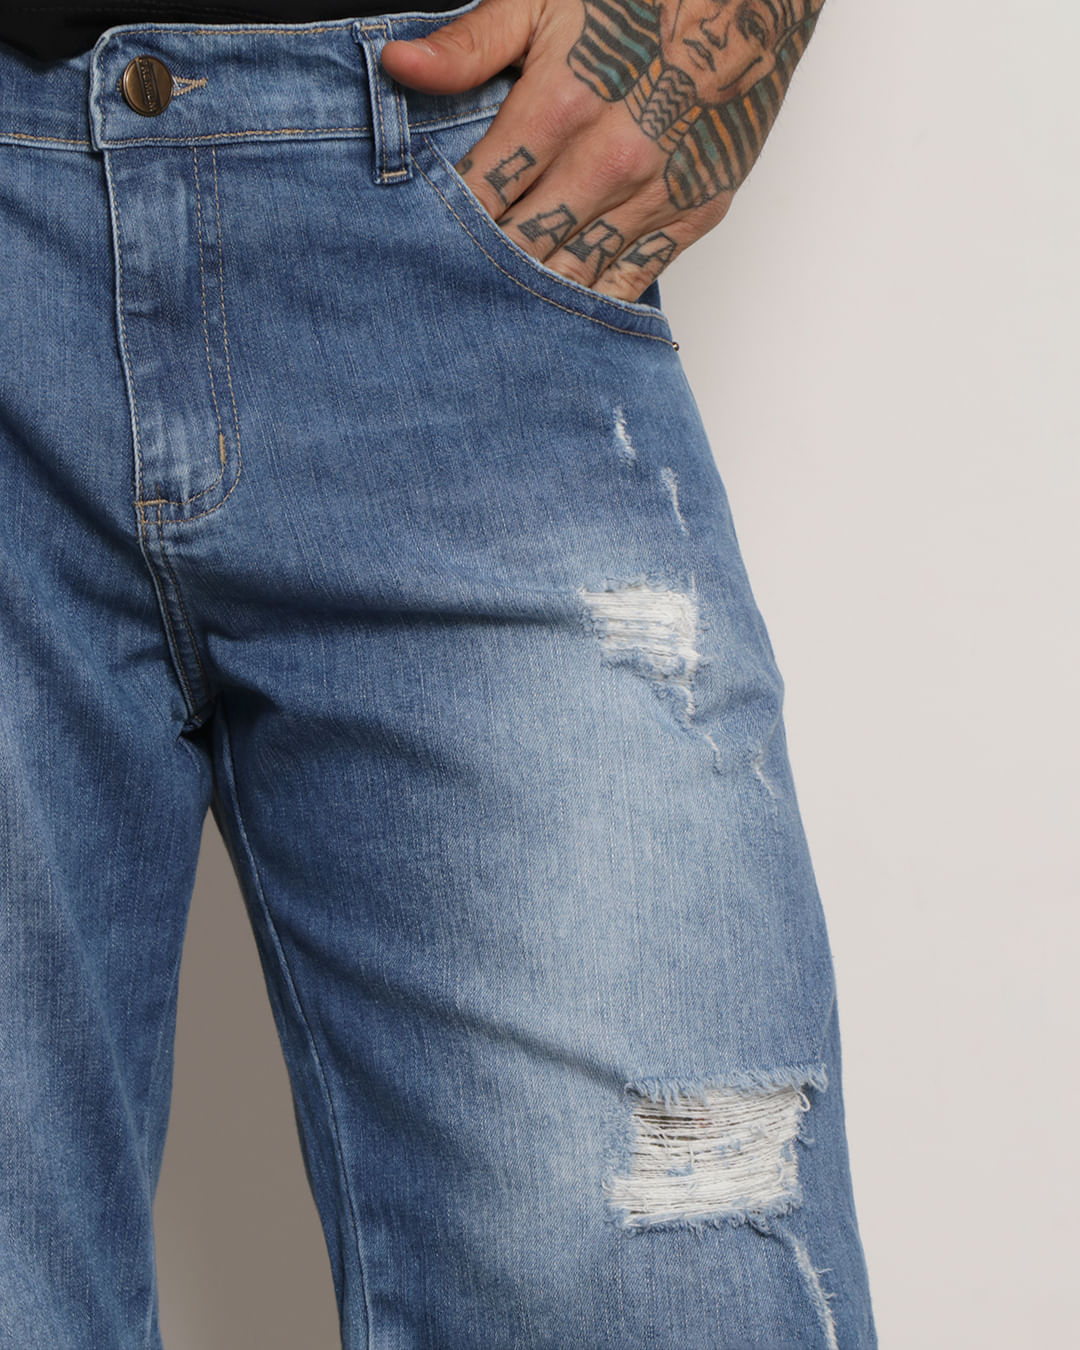 Promoção de Bermuda Jeans Masculina Destroyed Azul Ref: 395 - CT